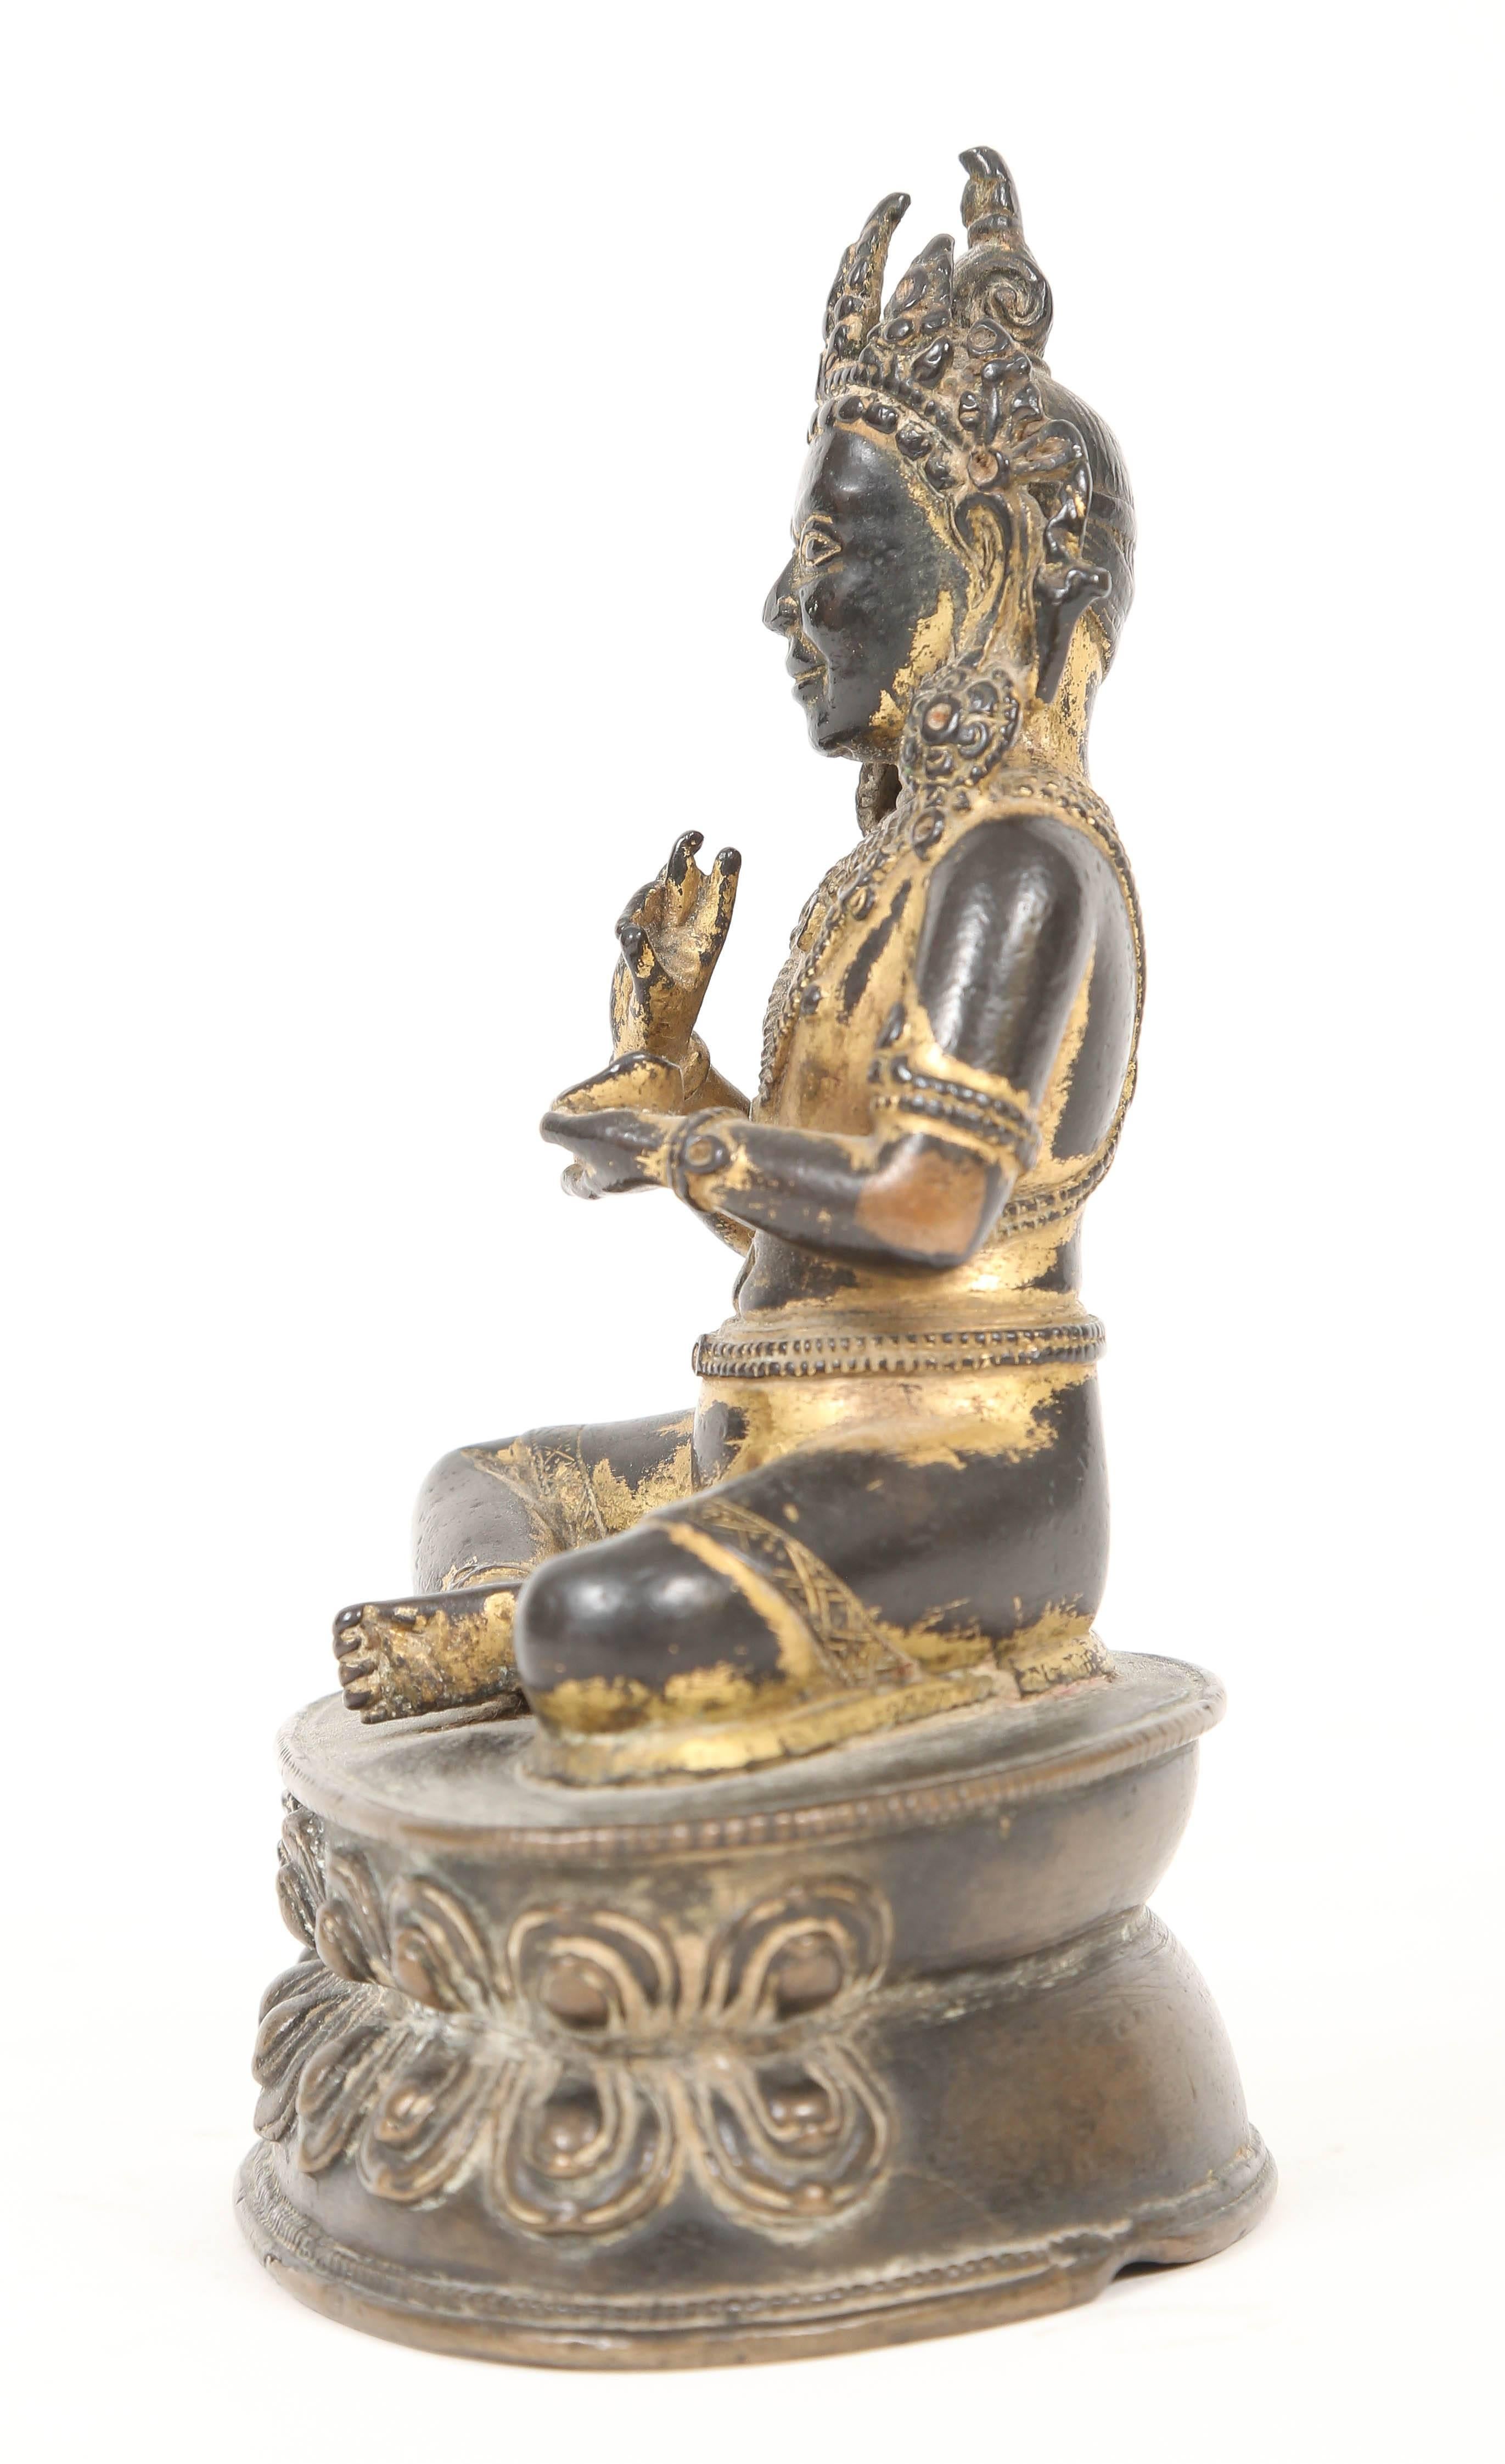 Chinese Gilt Bronze Figure of the Buddha Amitayus, Tibet, 16th-17th Century